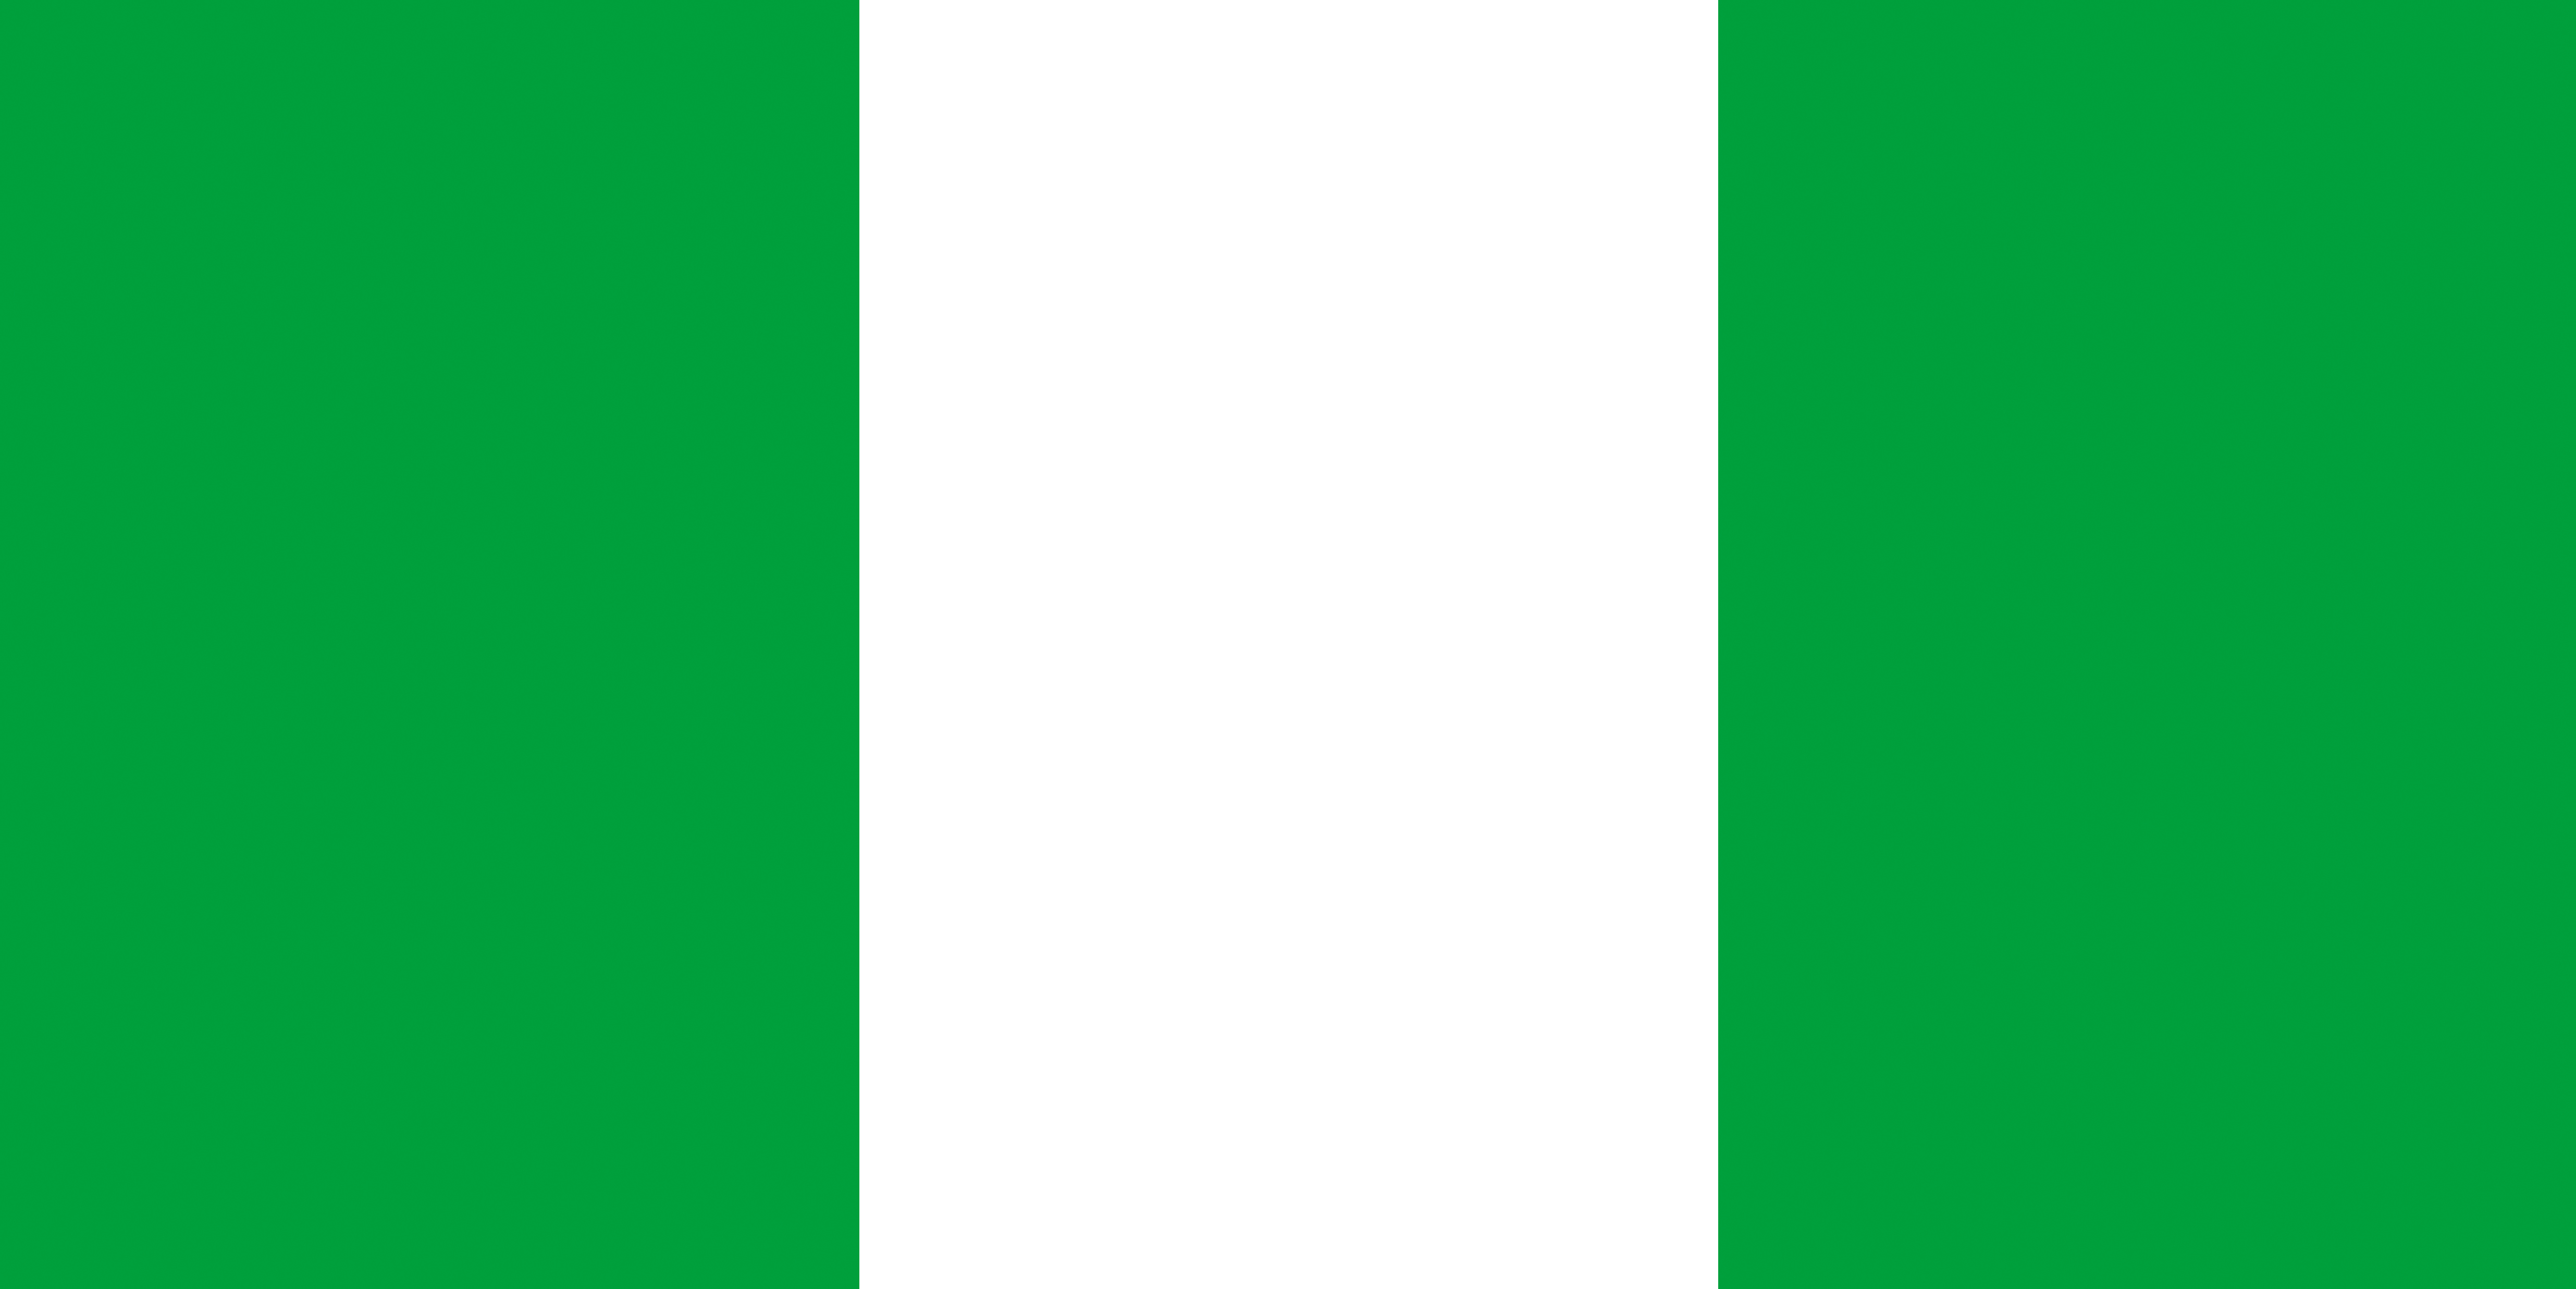 Nigeria_Bandiera